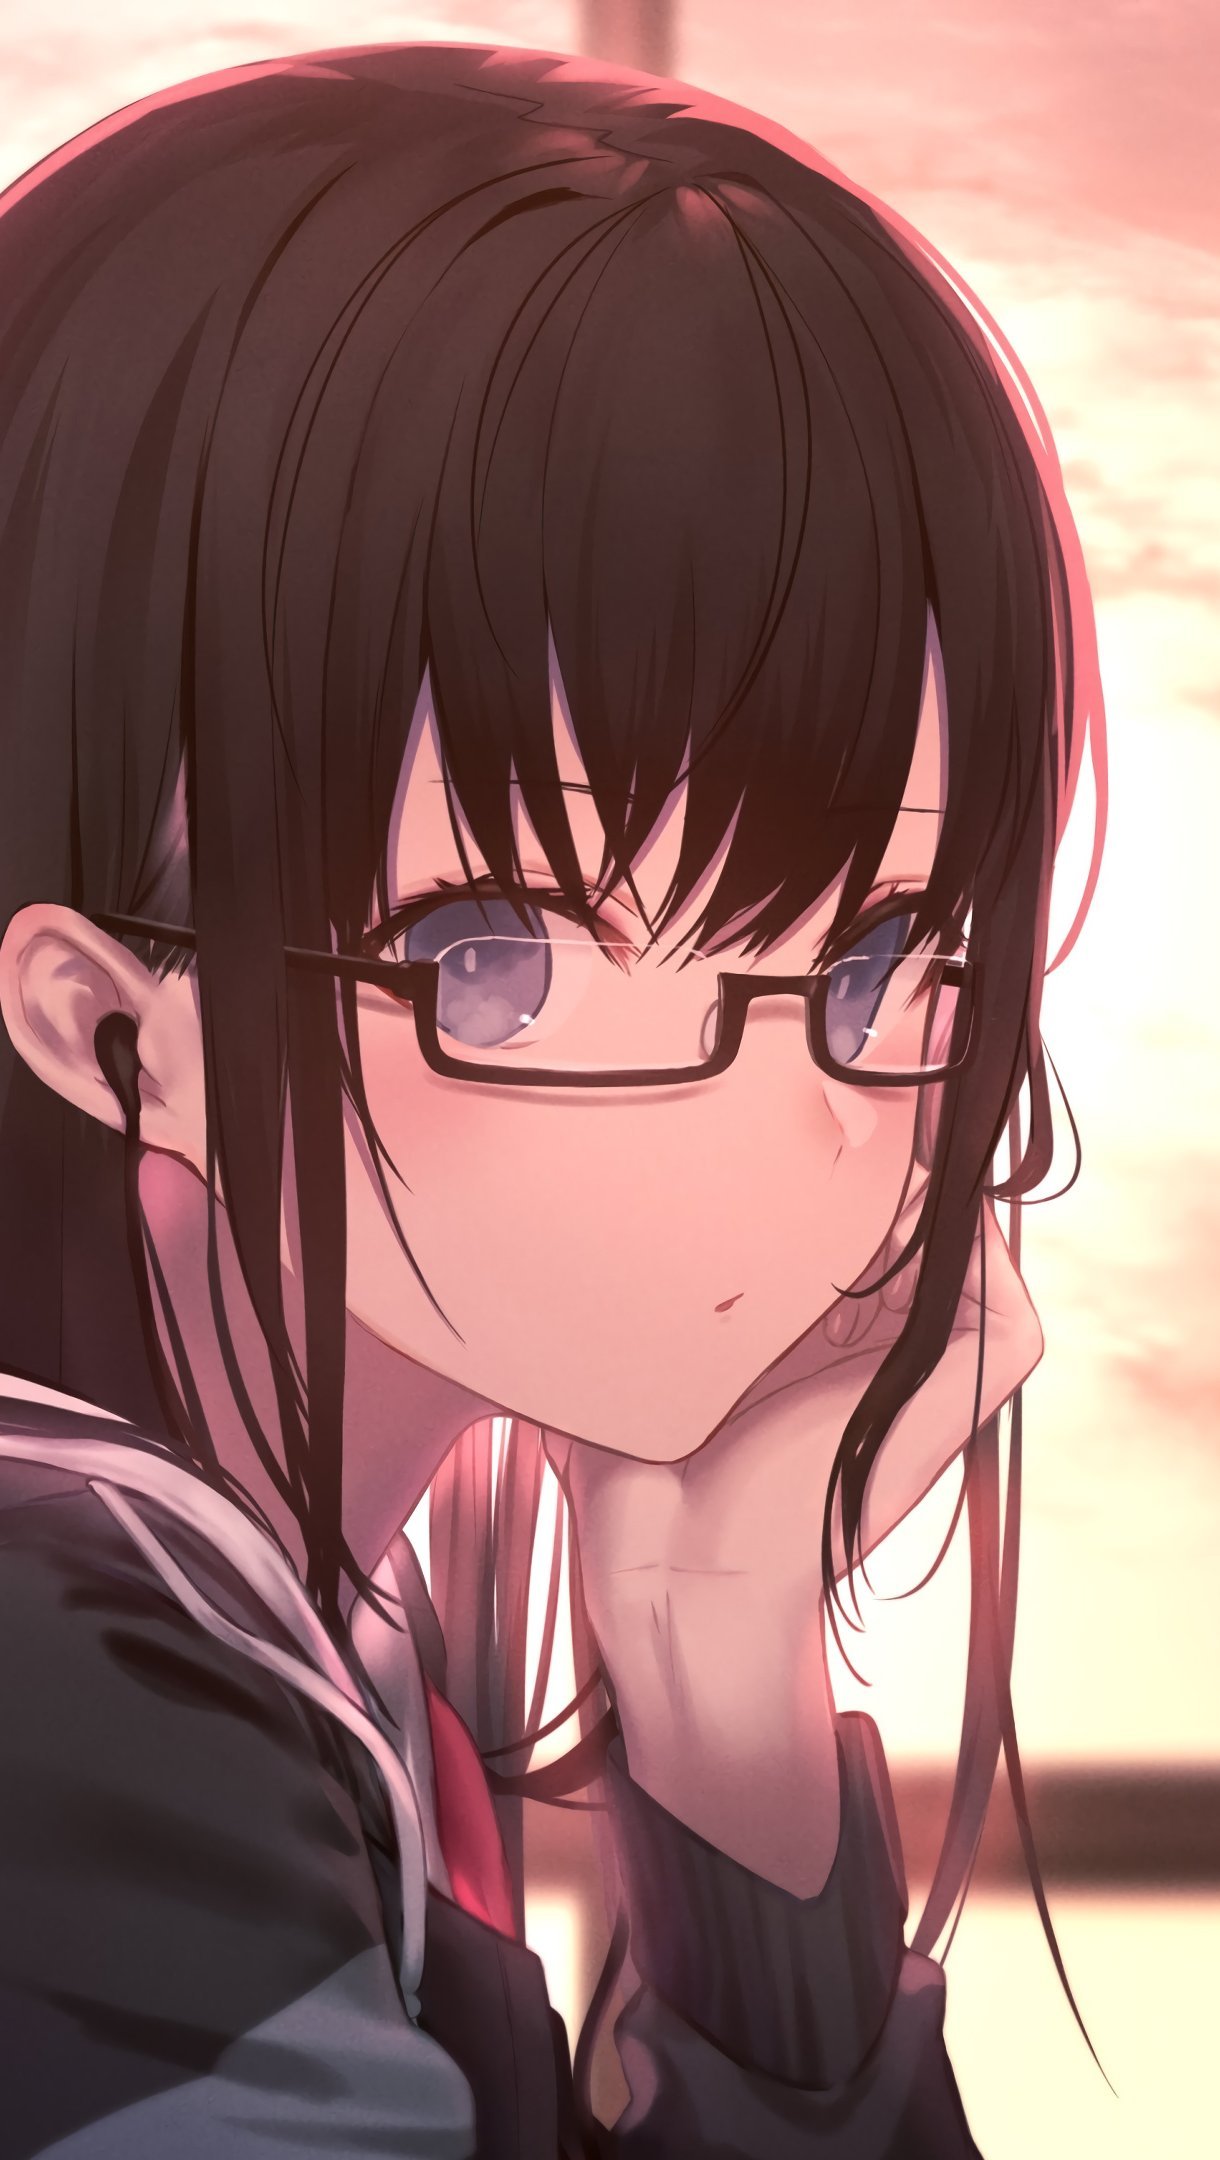 Fondos de pantalla Anime Chica de Gafas con Uniforme de Estudiante Vertical